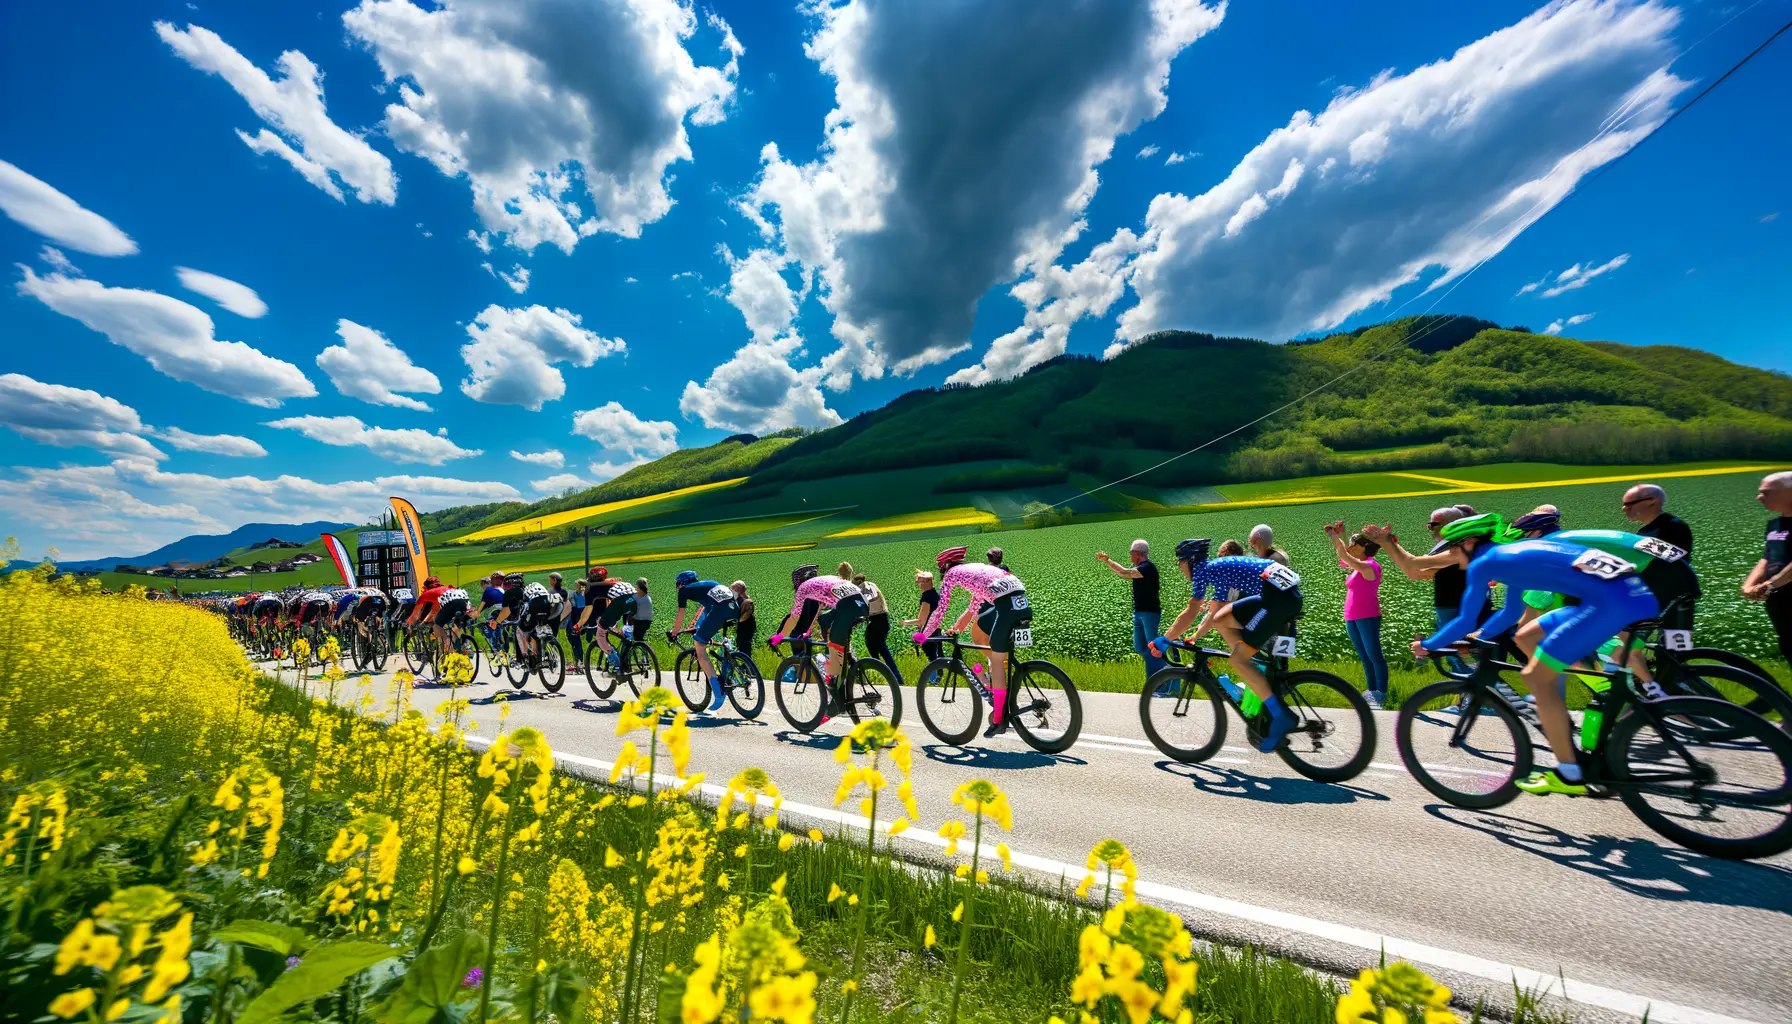 Atmosphärisches Bild eines Radsportevents